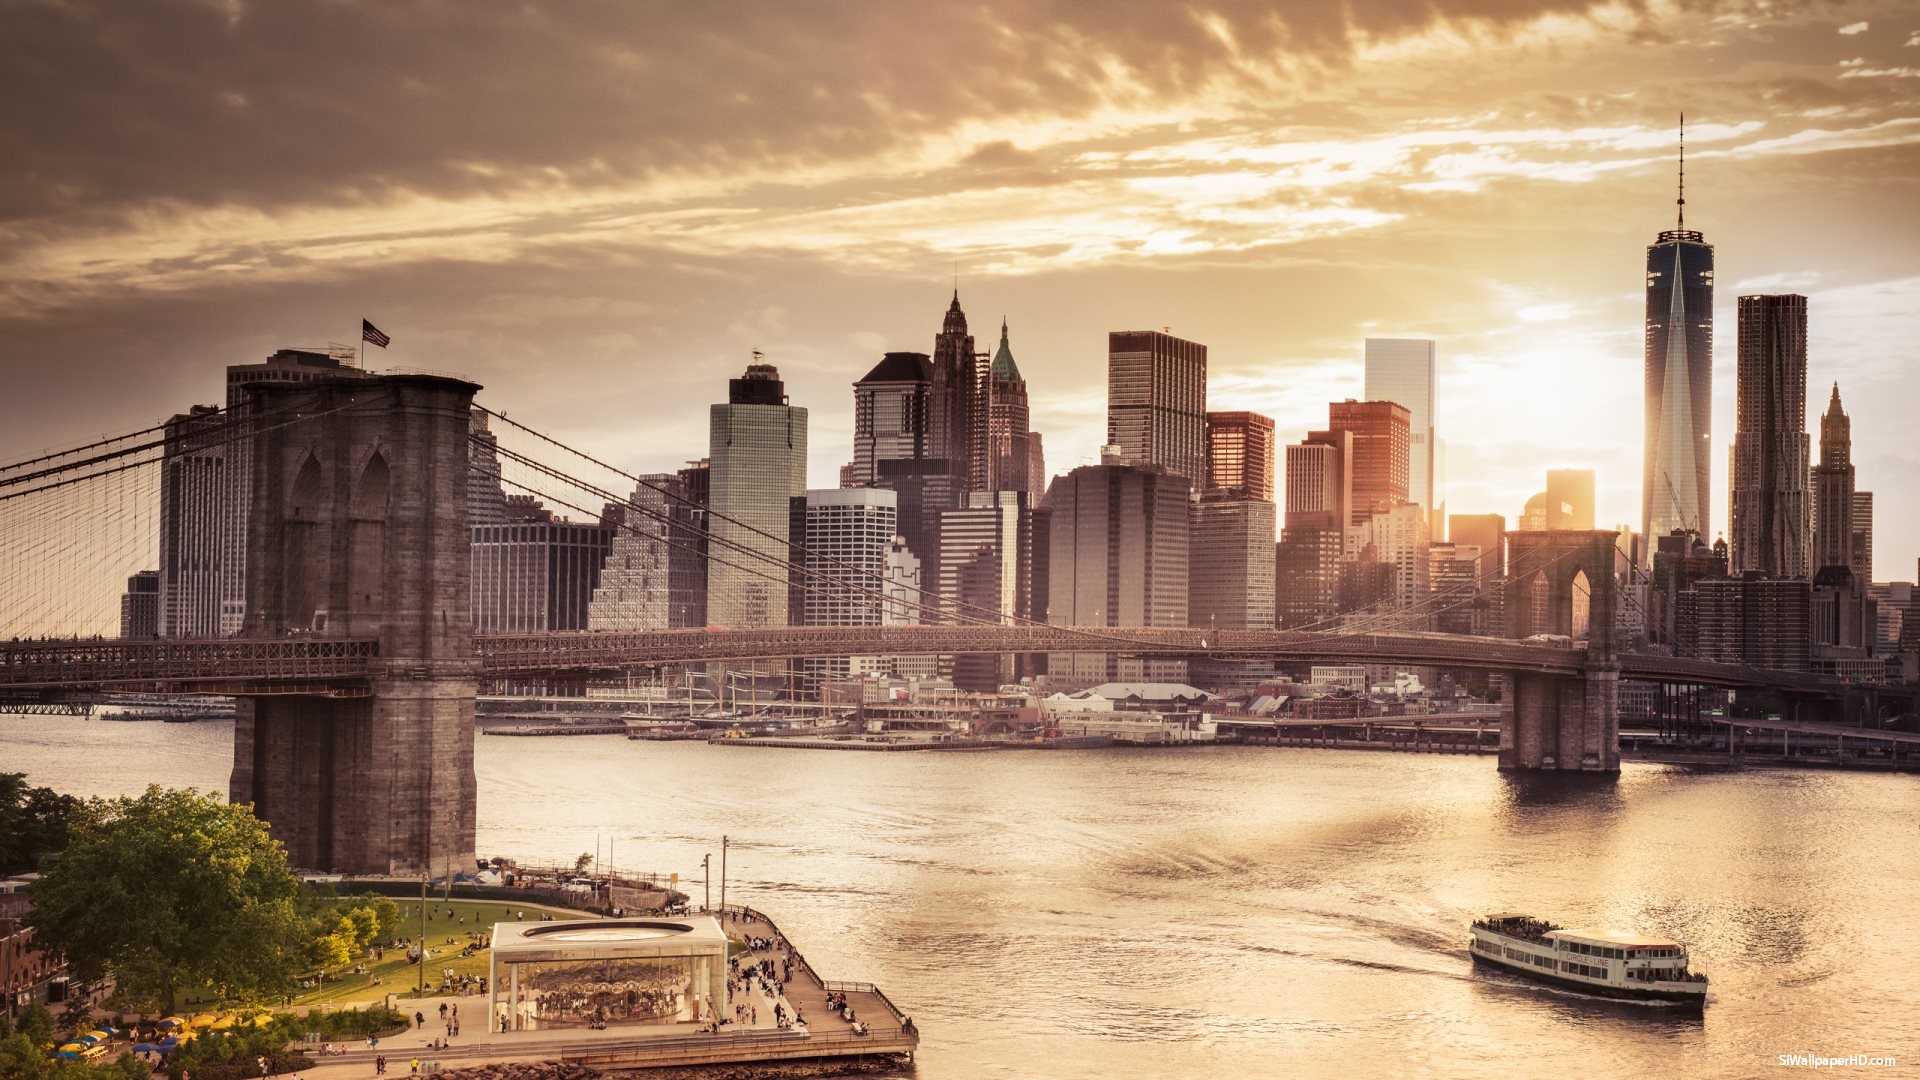 Tầm nhìn cao New York cho phép bạn nhìn từ trên cao xuống địa phương lớn nhất và phát triển nhất của nước Mỹ. Những tòa nhà cao trọc, đường phố tấp nập và con sông mang đến cho bạn cái nhìn toàn cảnh và cảm giác được mãn nhãn.